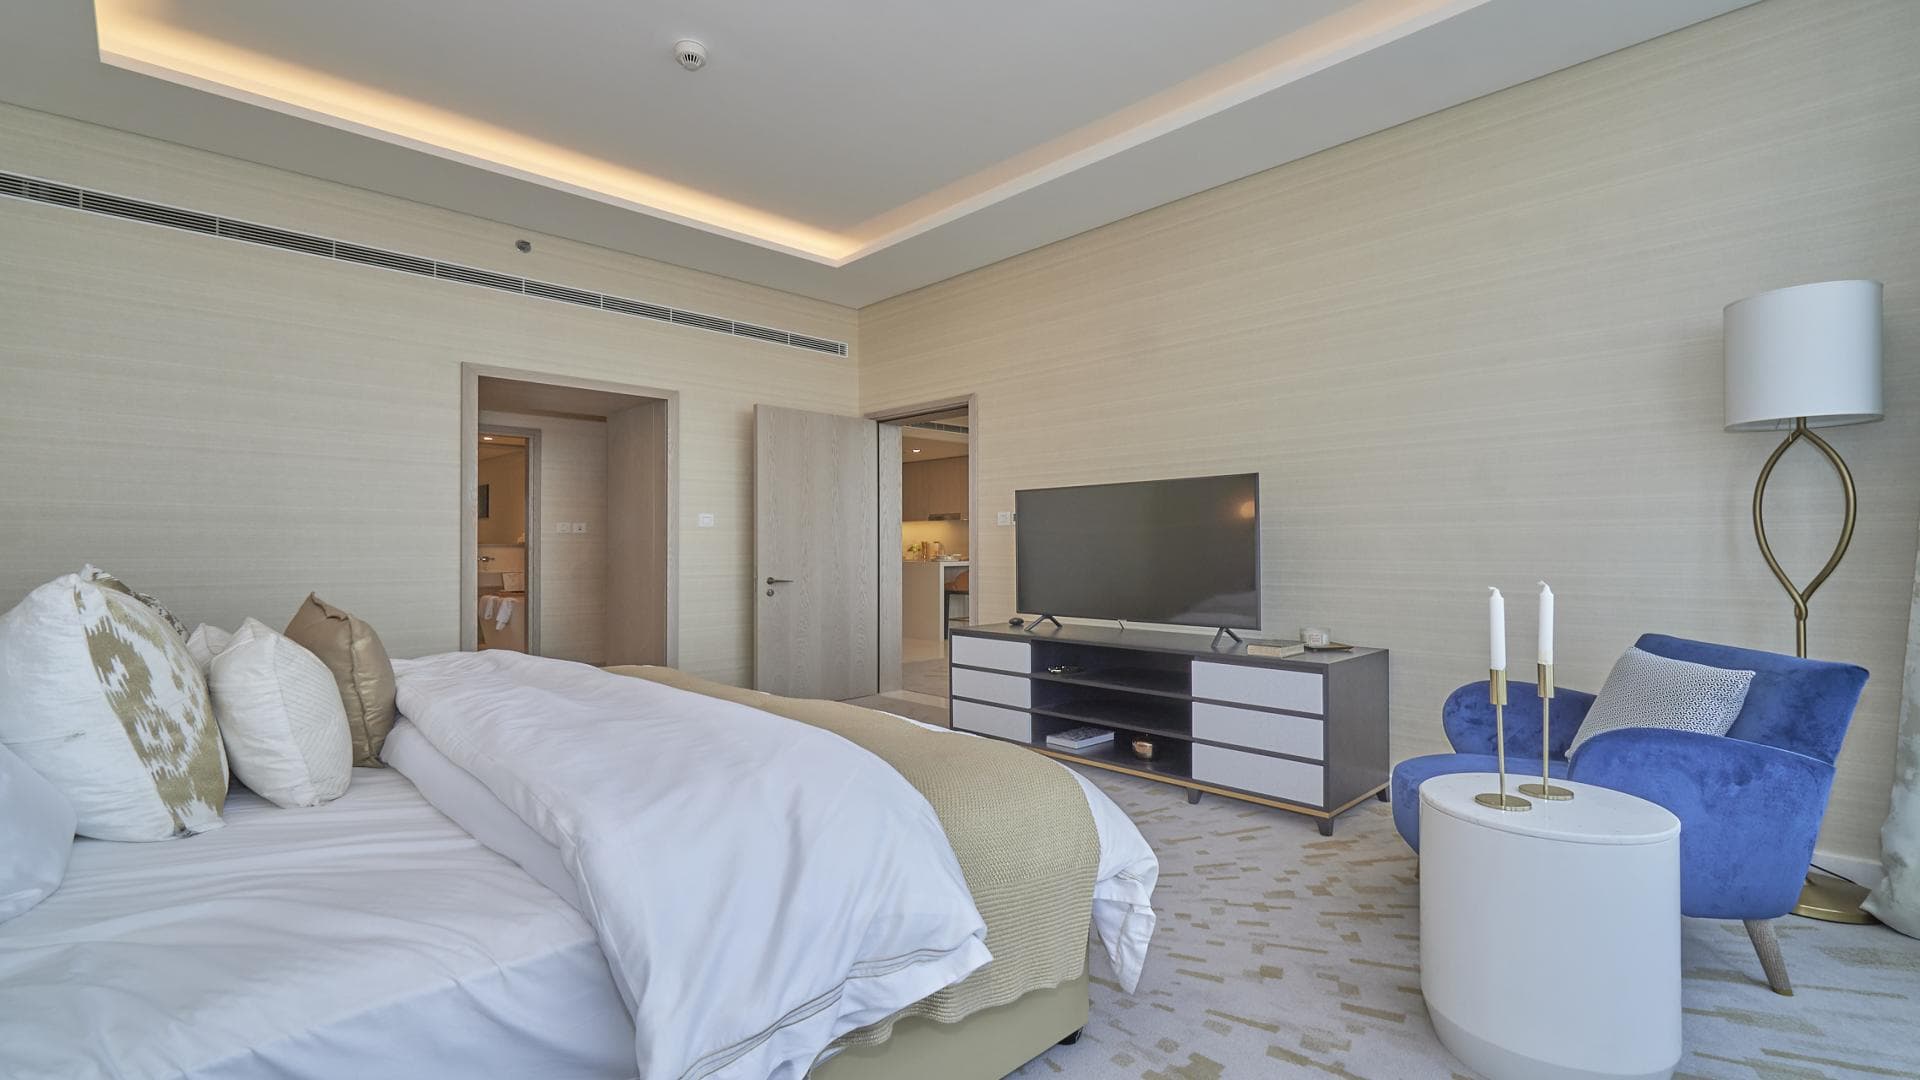 1 Bedroom Apartment For Rent Al Majara 5 Lp38271 311c17f4fd238e00.jpg